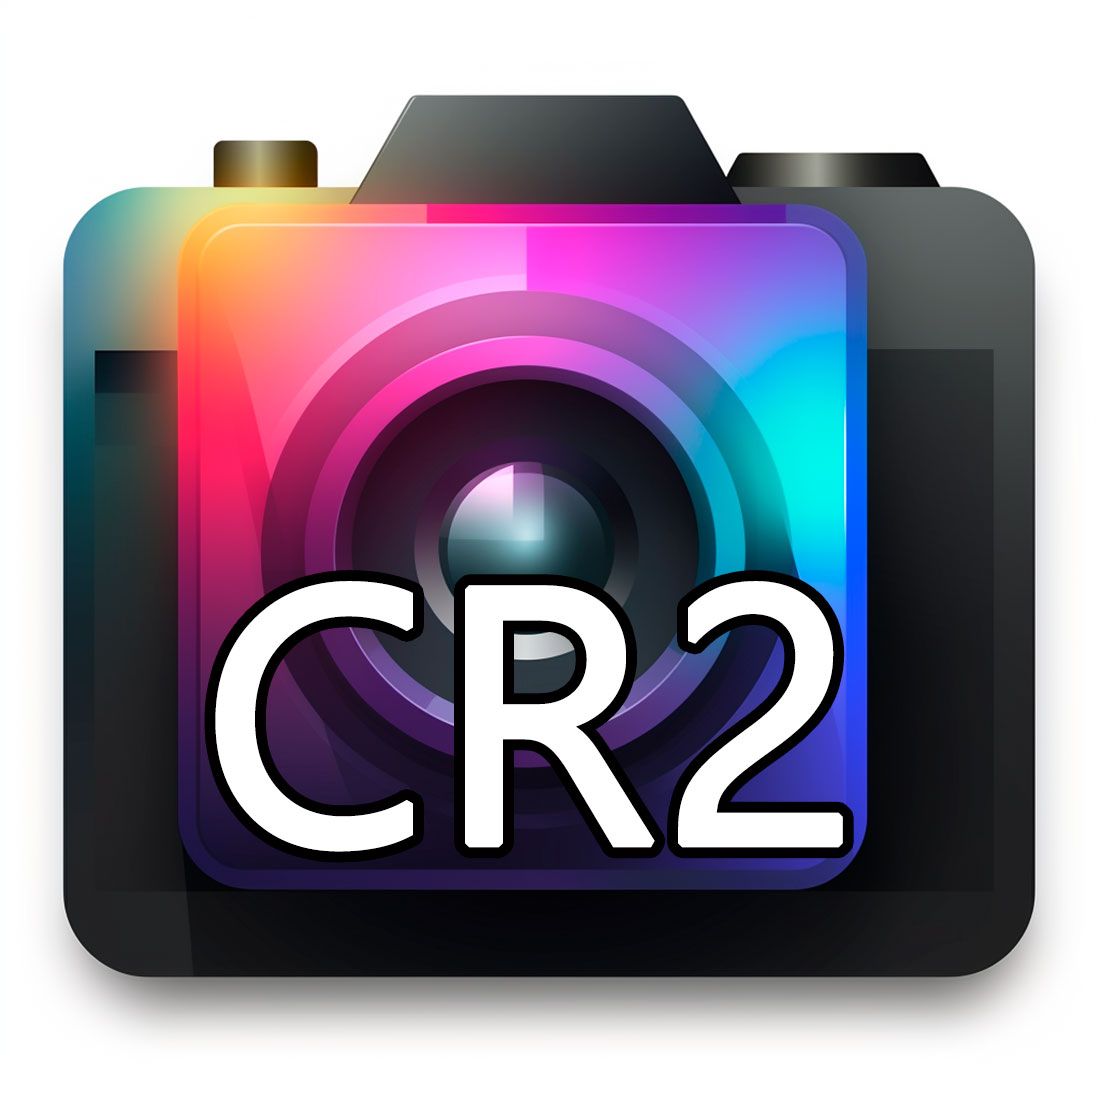 Imágenes en formato CR2..